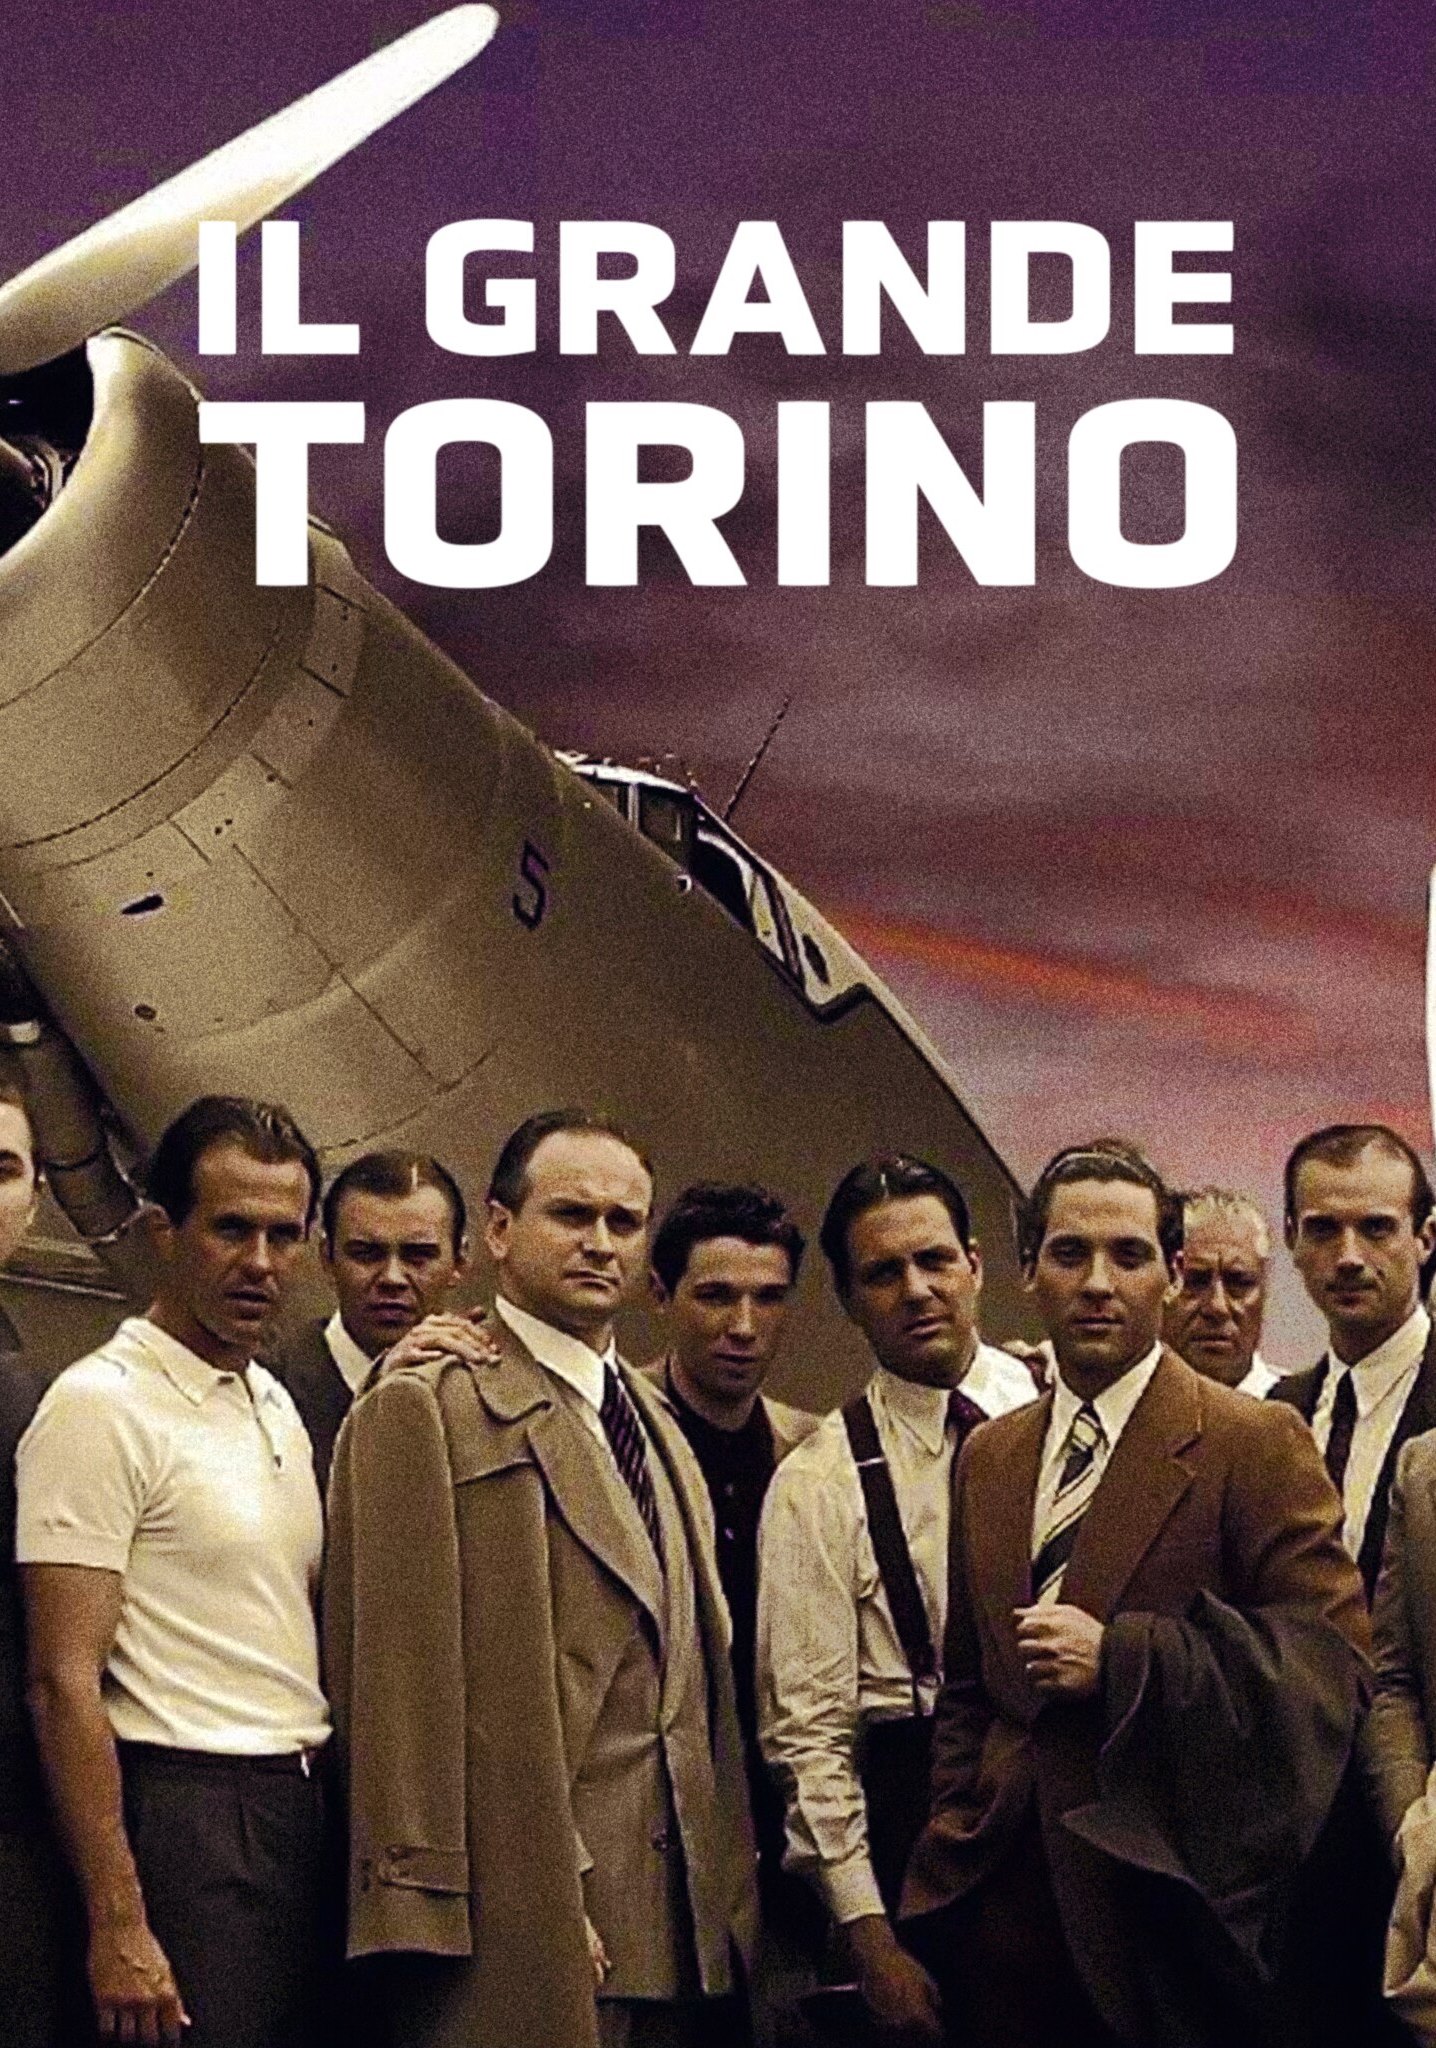 Il grande Torino